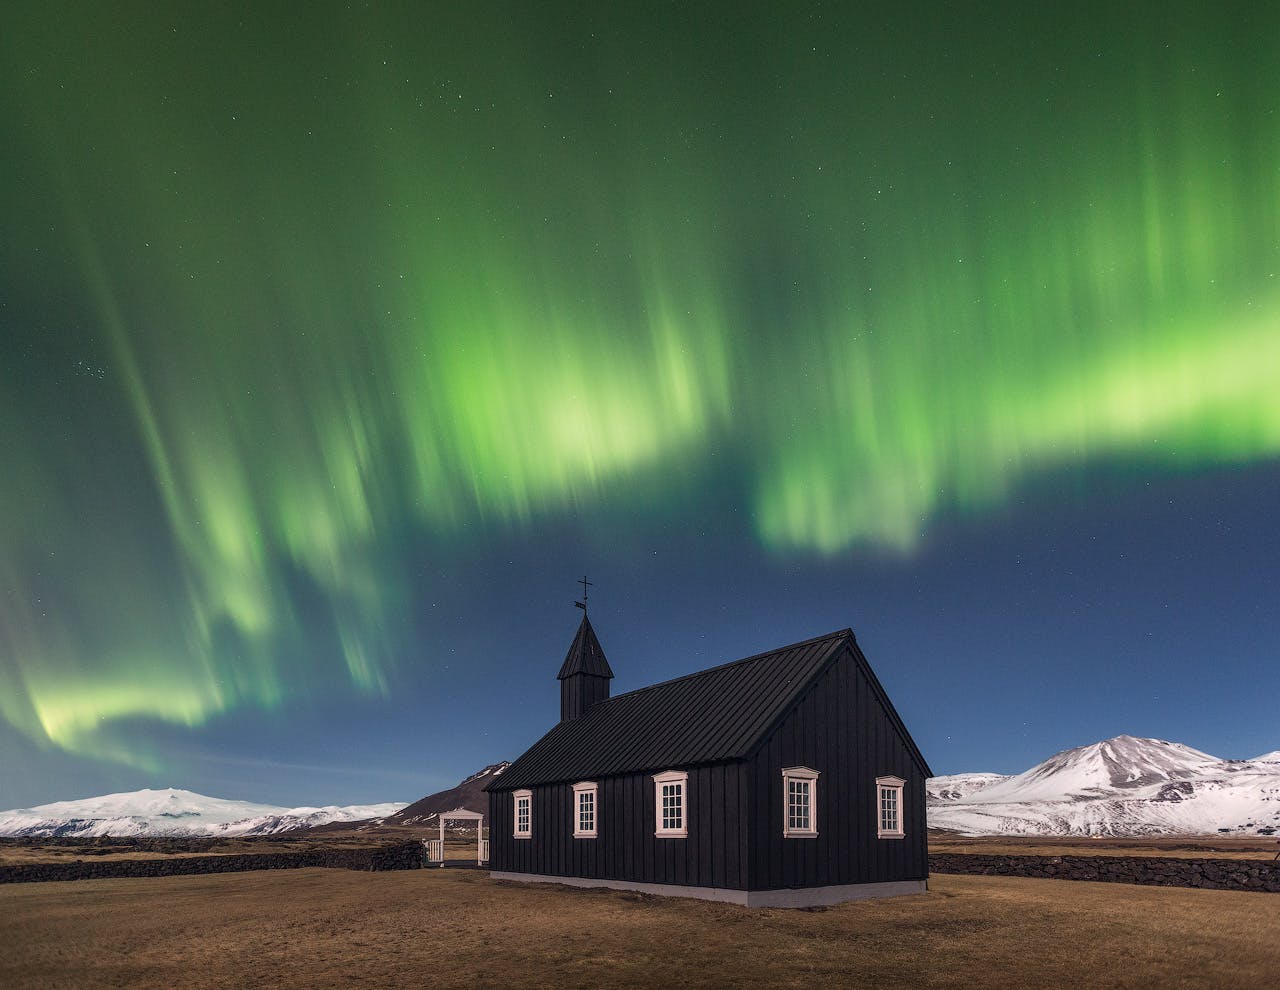 Pendant les mois d'automne en Islande, il est possible de voir les aurores boréales telles qu'elles sont sur cette image